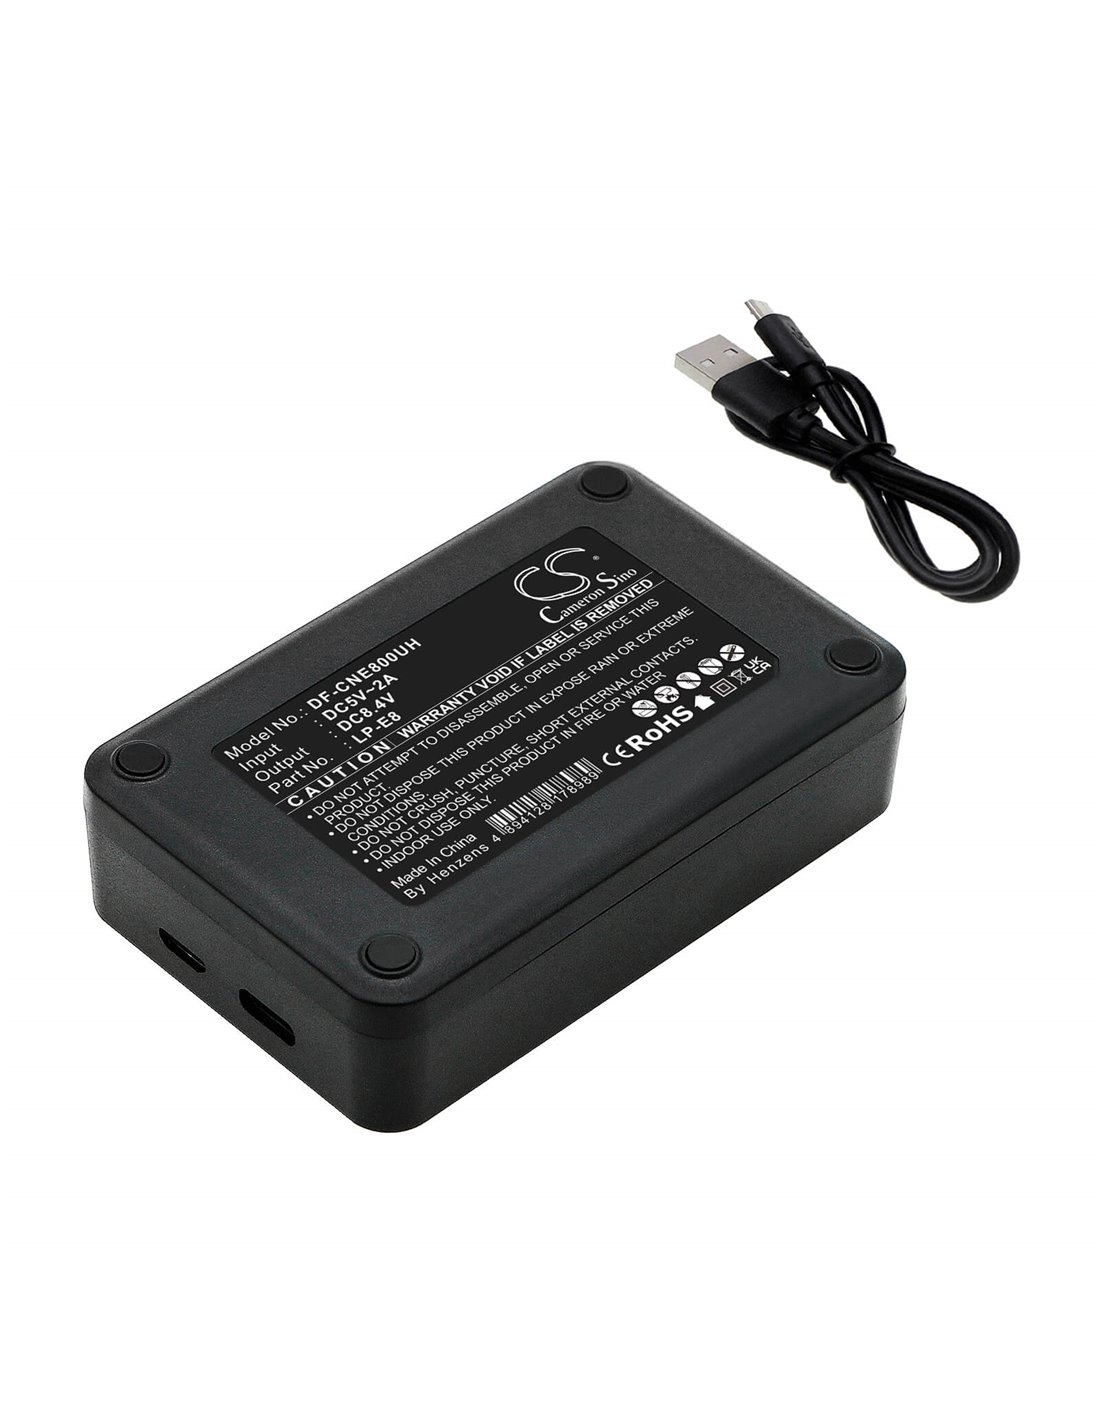 Dual battery charger to charge Lc-e8, Lc-e8c, Lc-e8e, Lp-e8